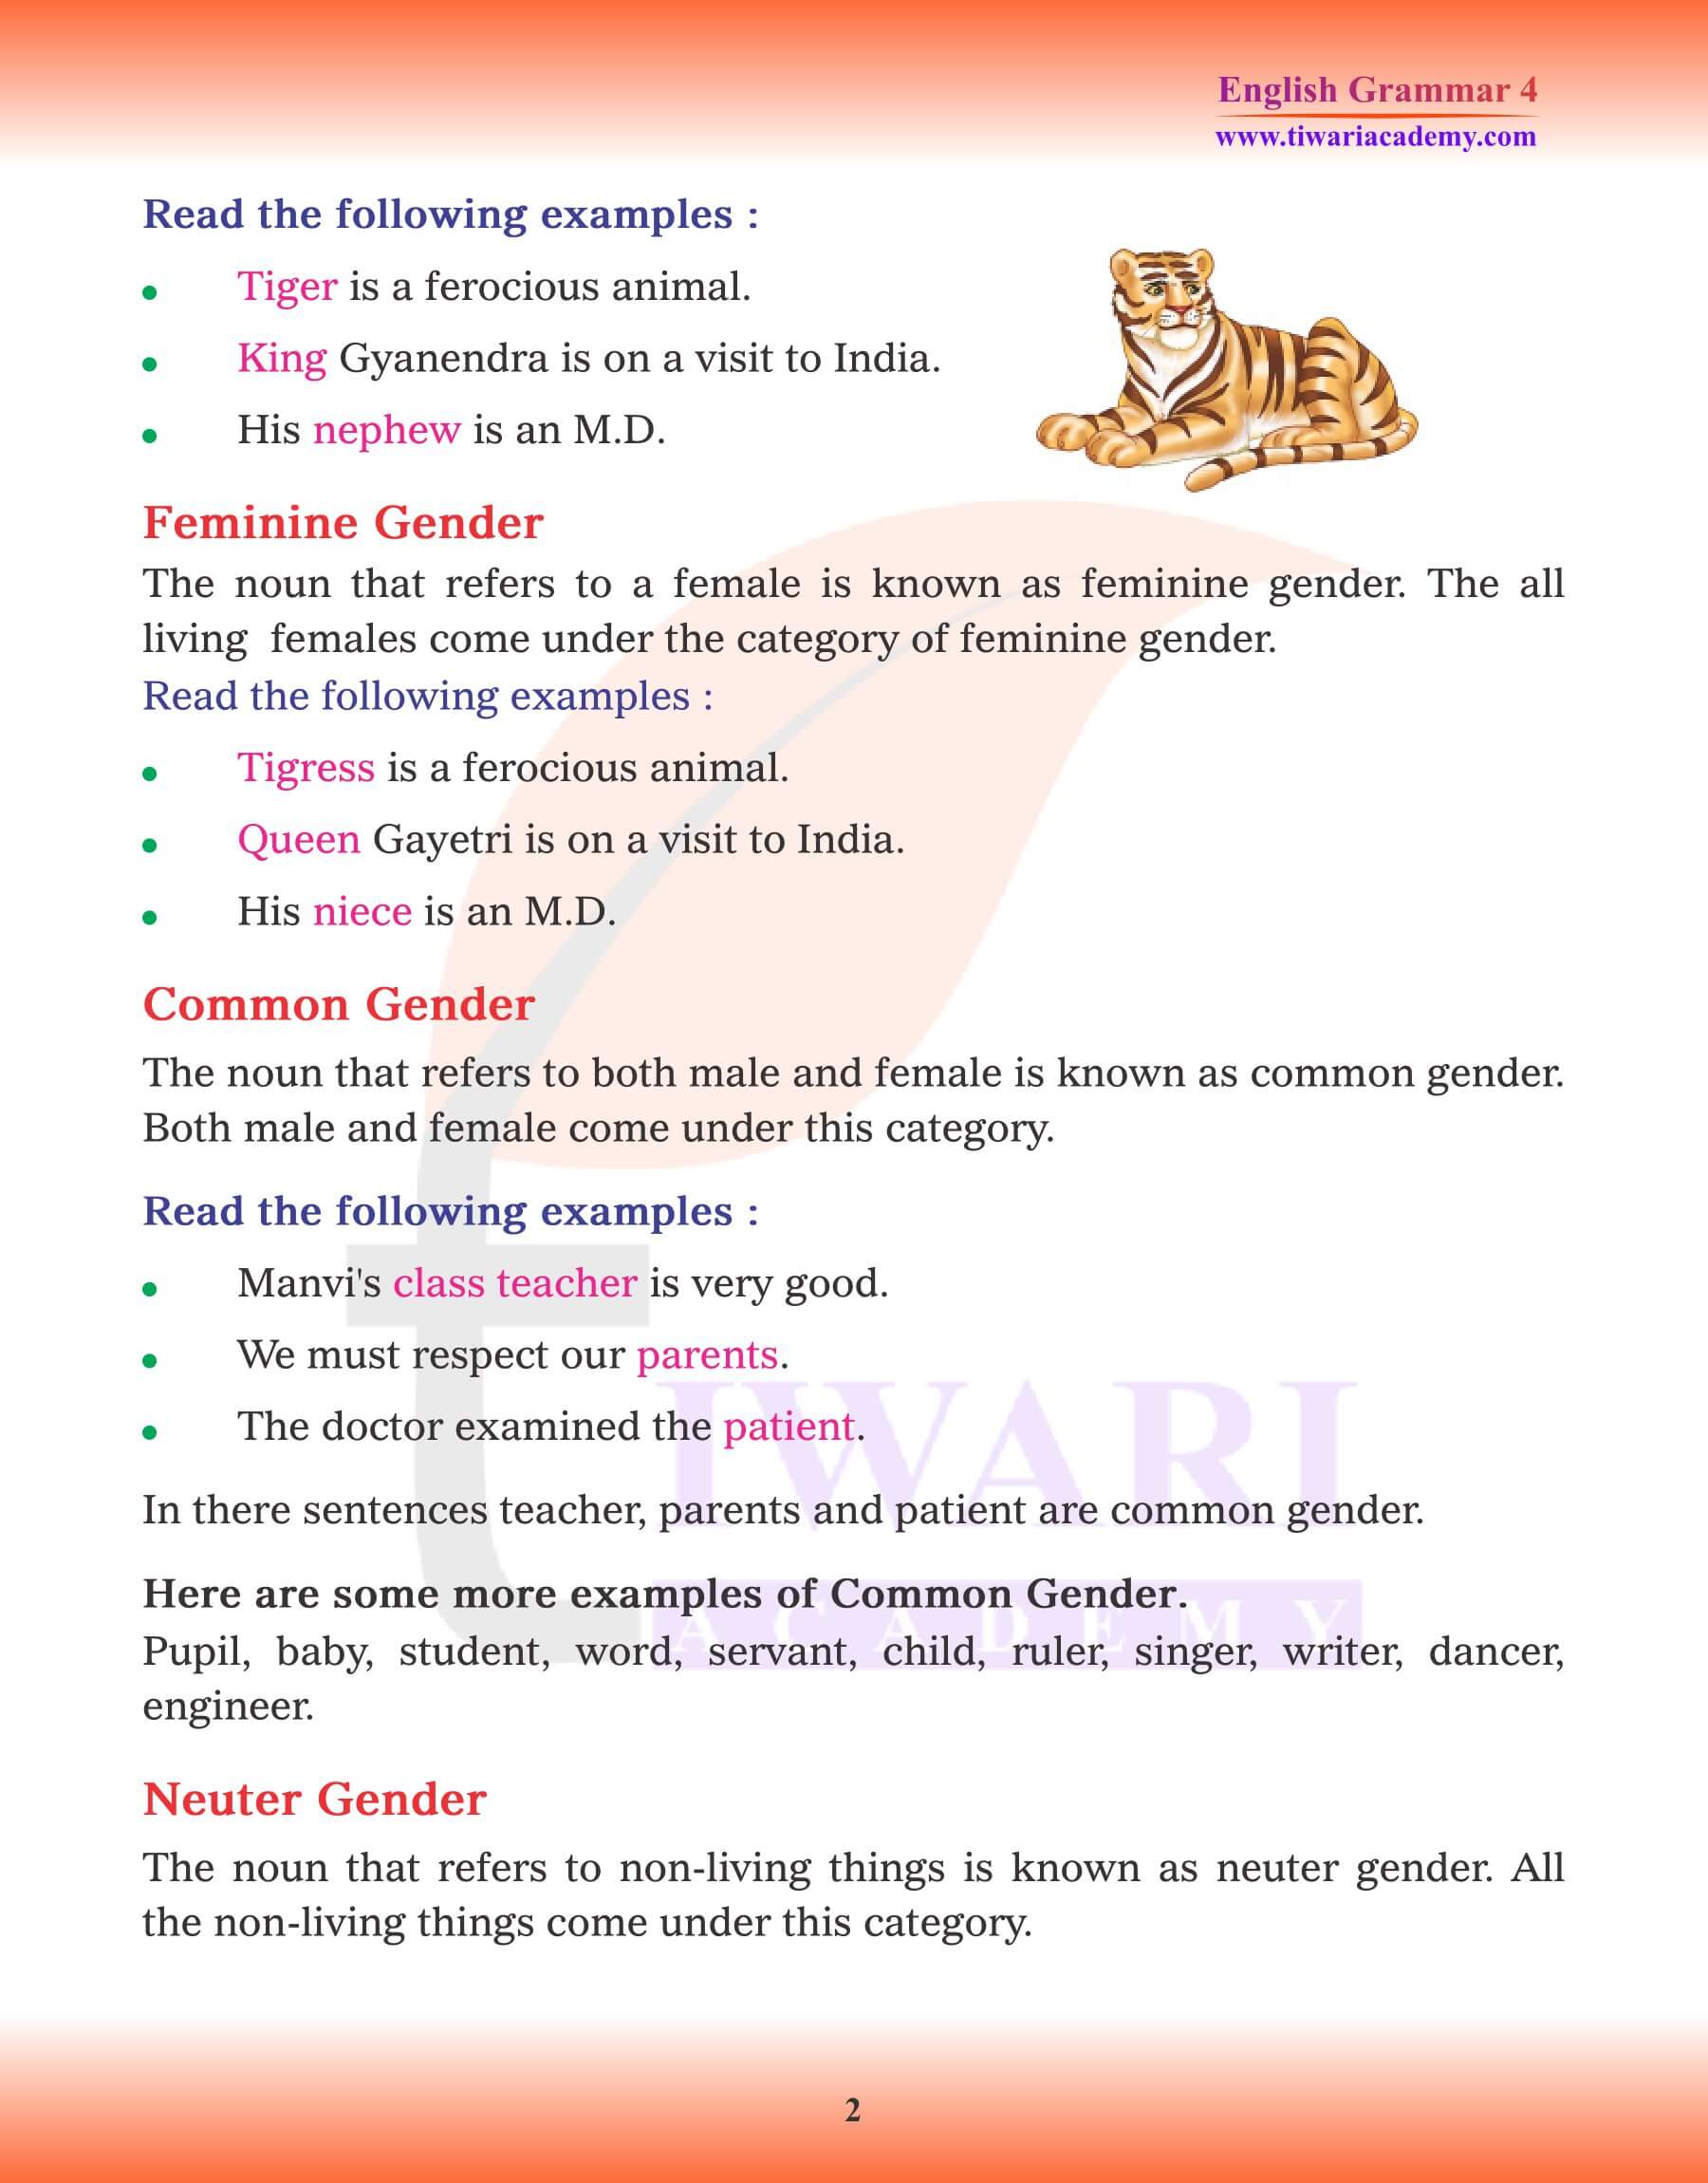 Class 4 Grammar Chapter 6 The Noun Gender